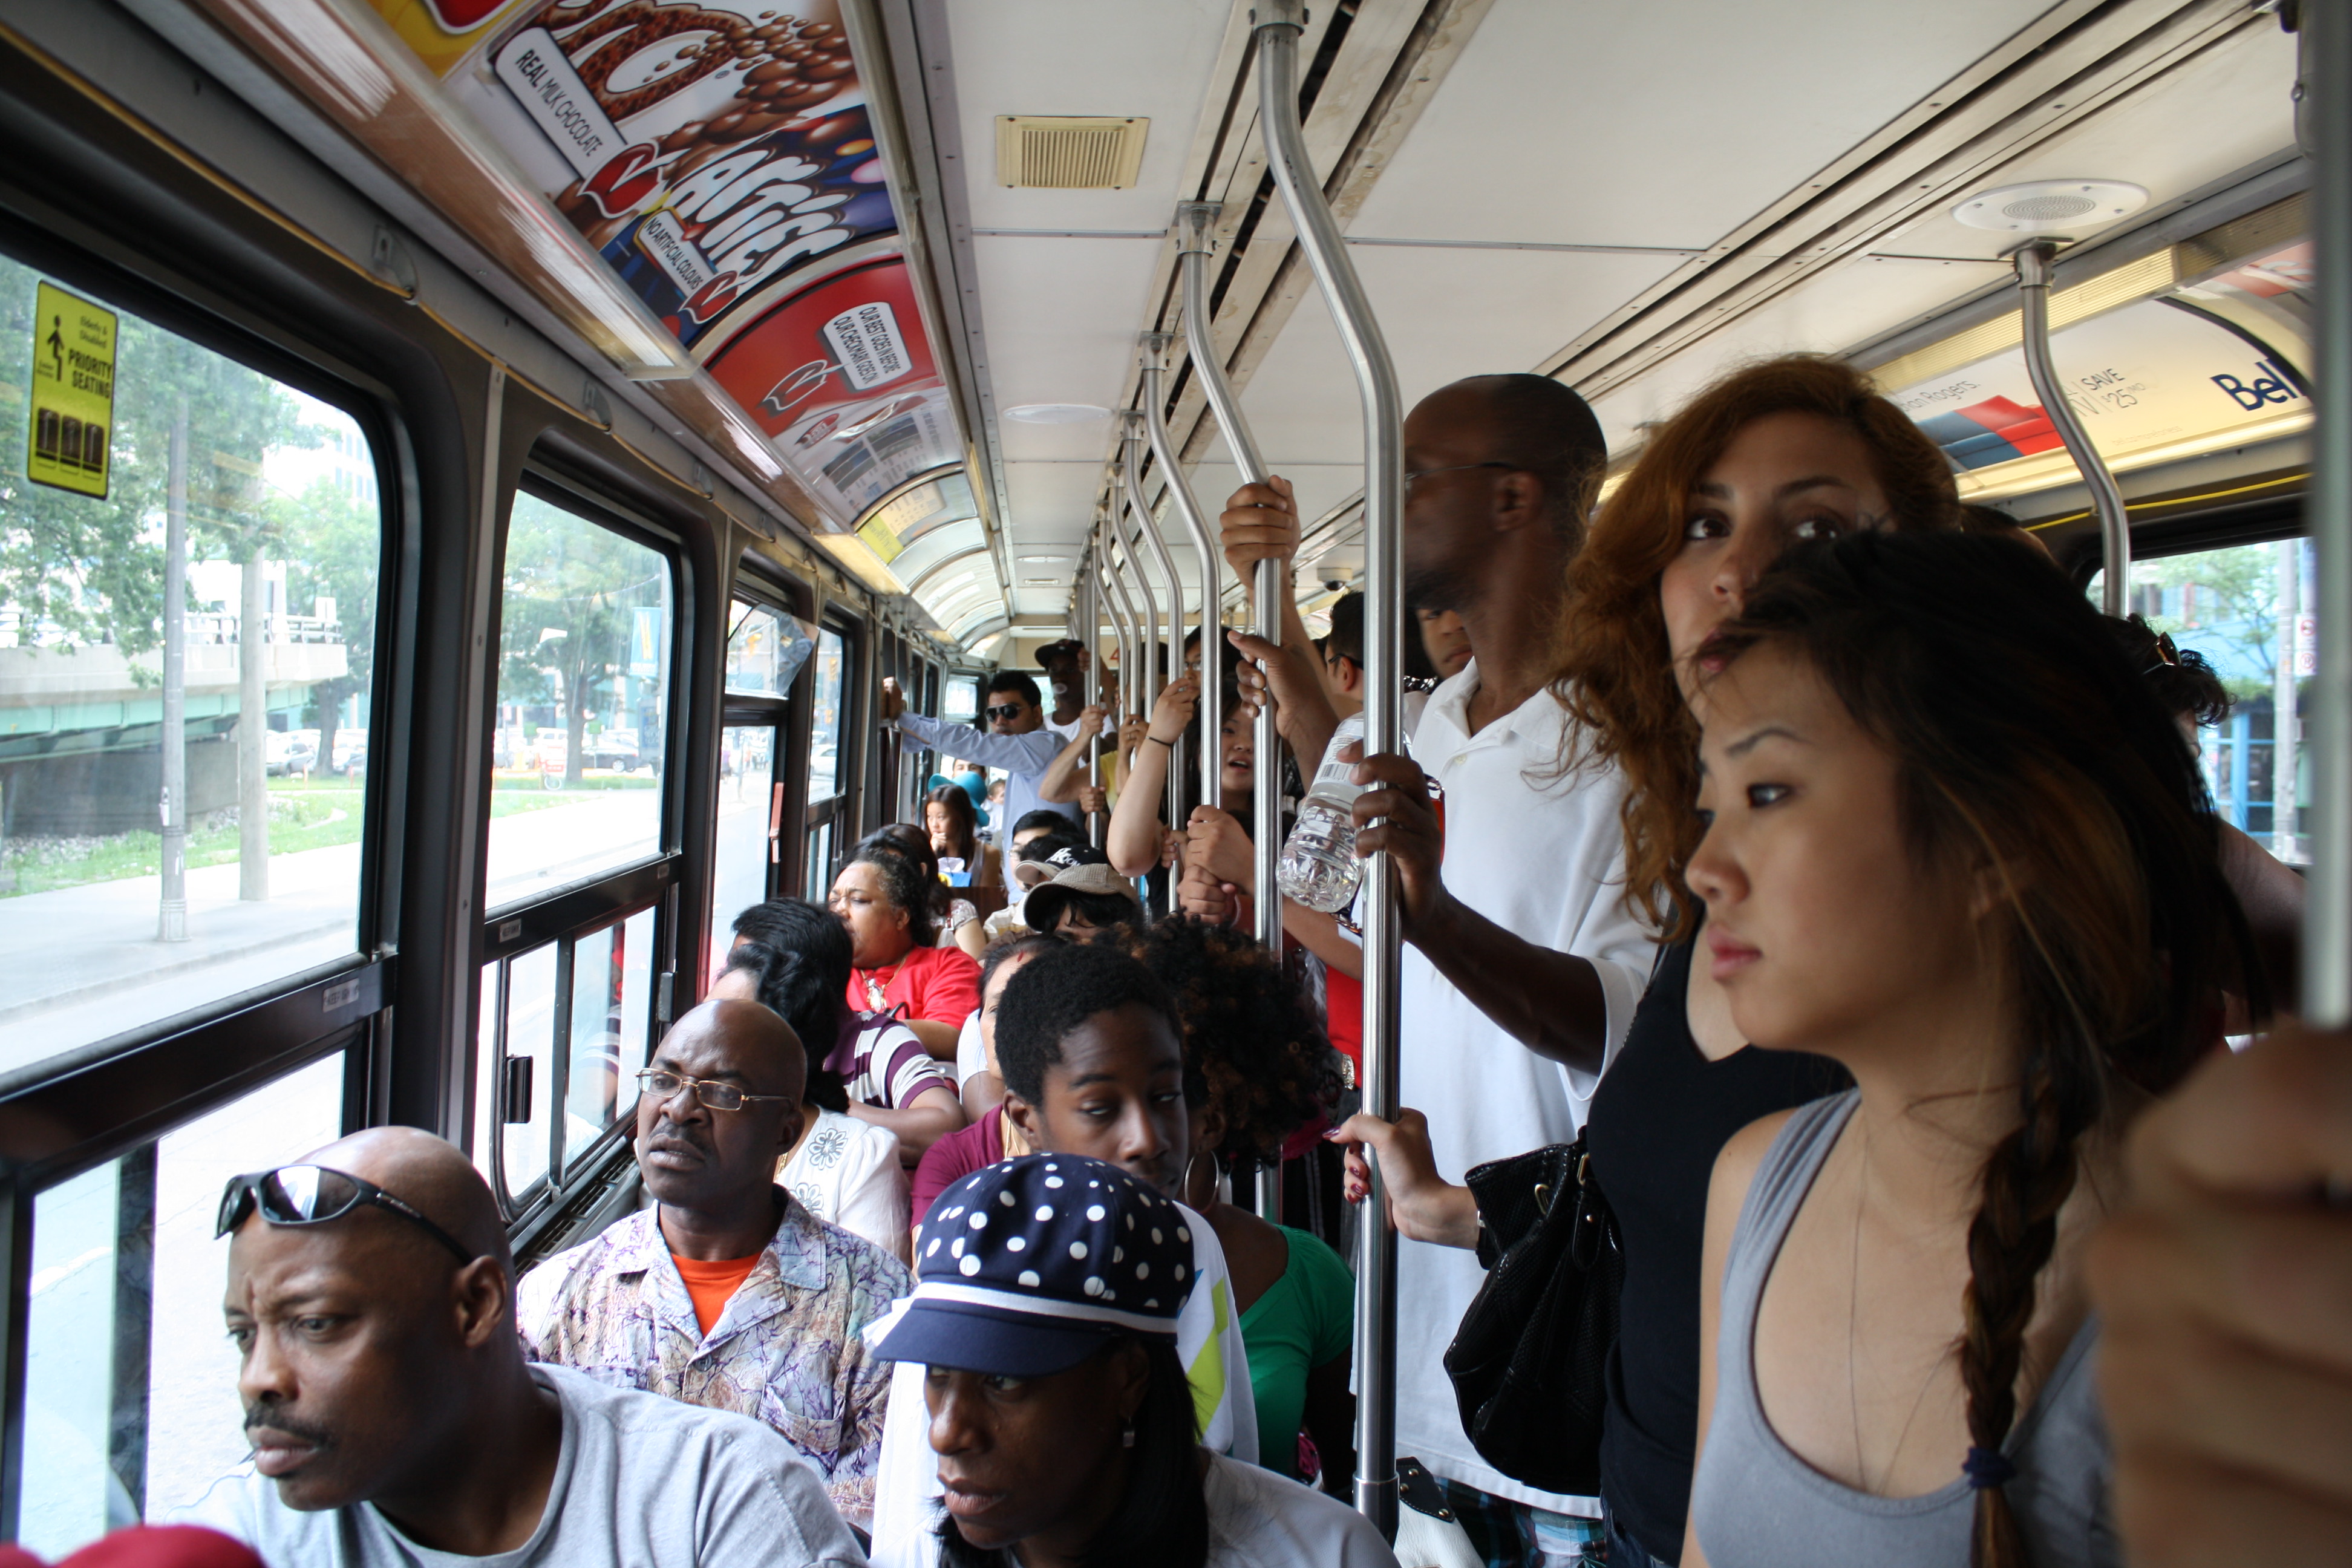 Public 19. Public transport crowd. Black women public transport Bus Handle photo.